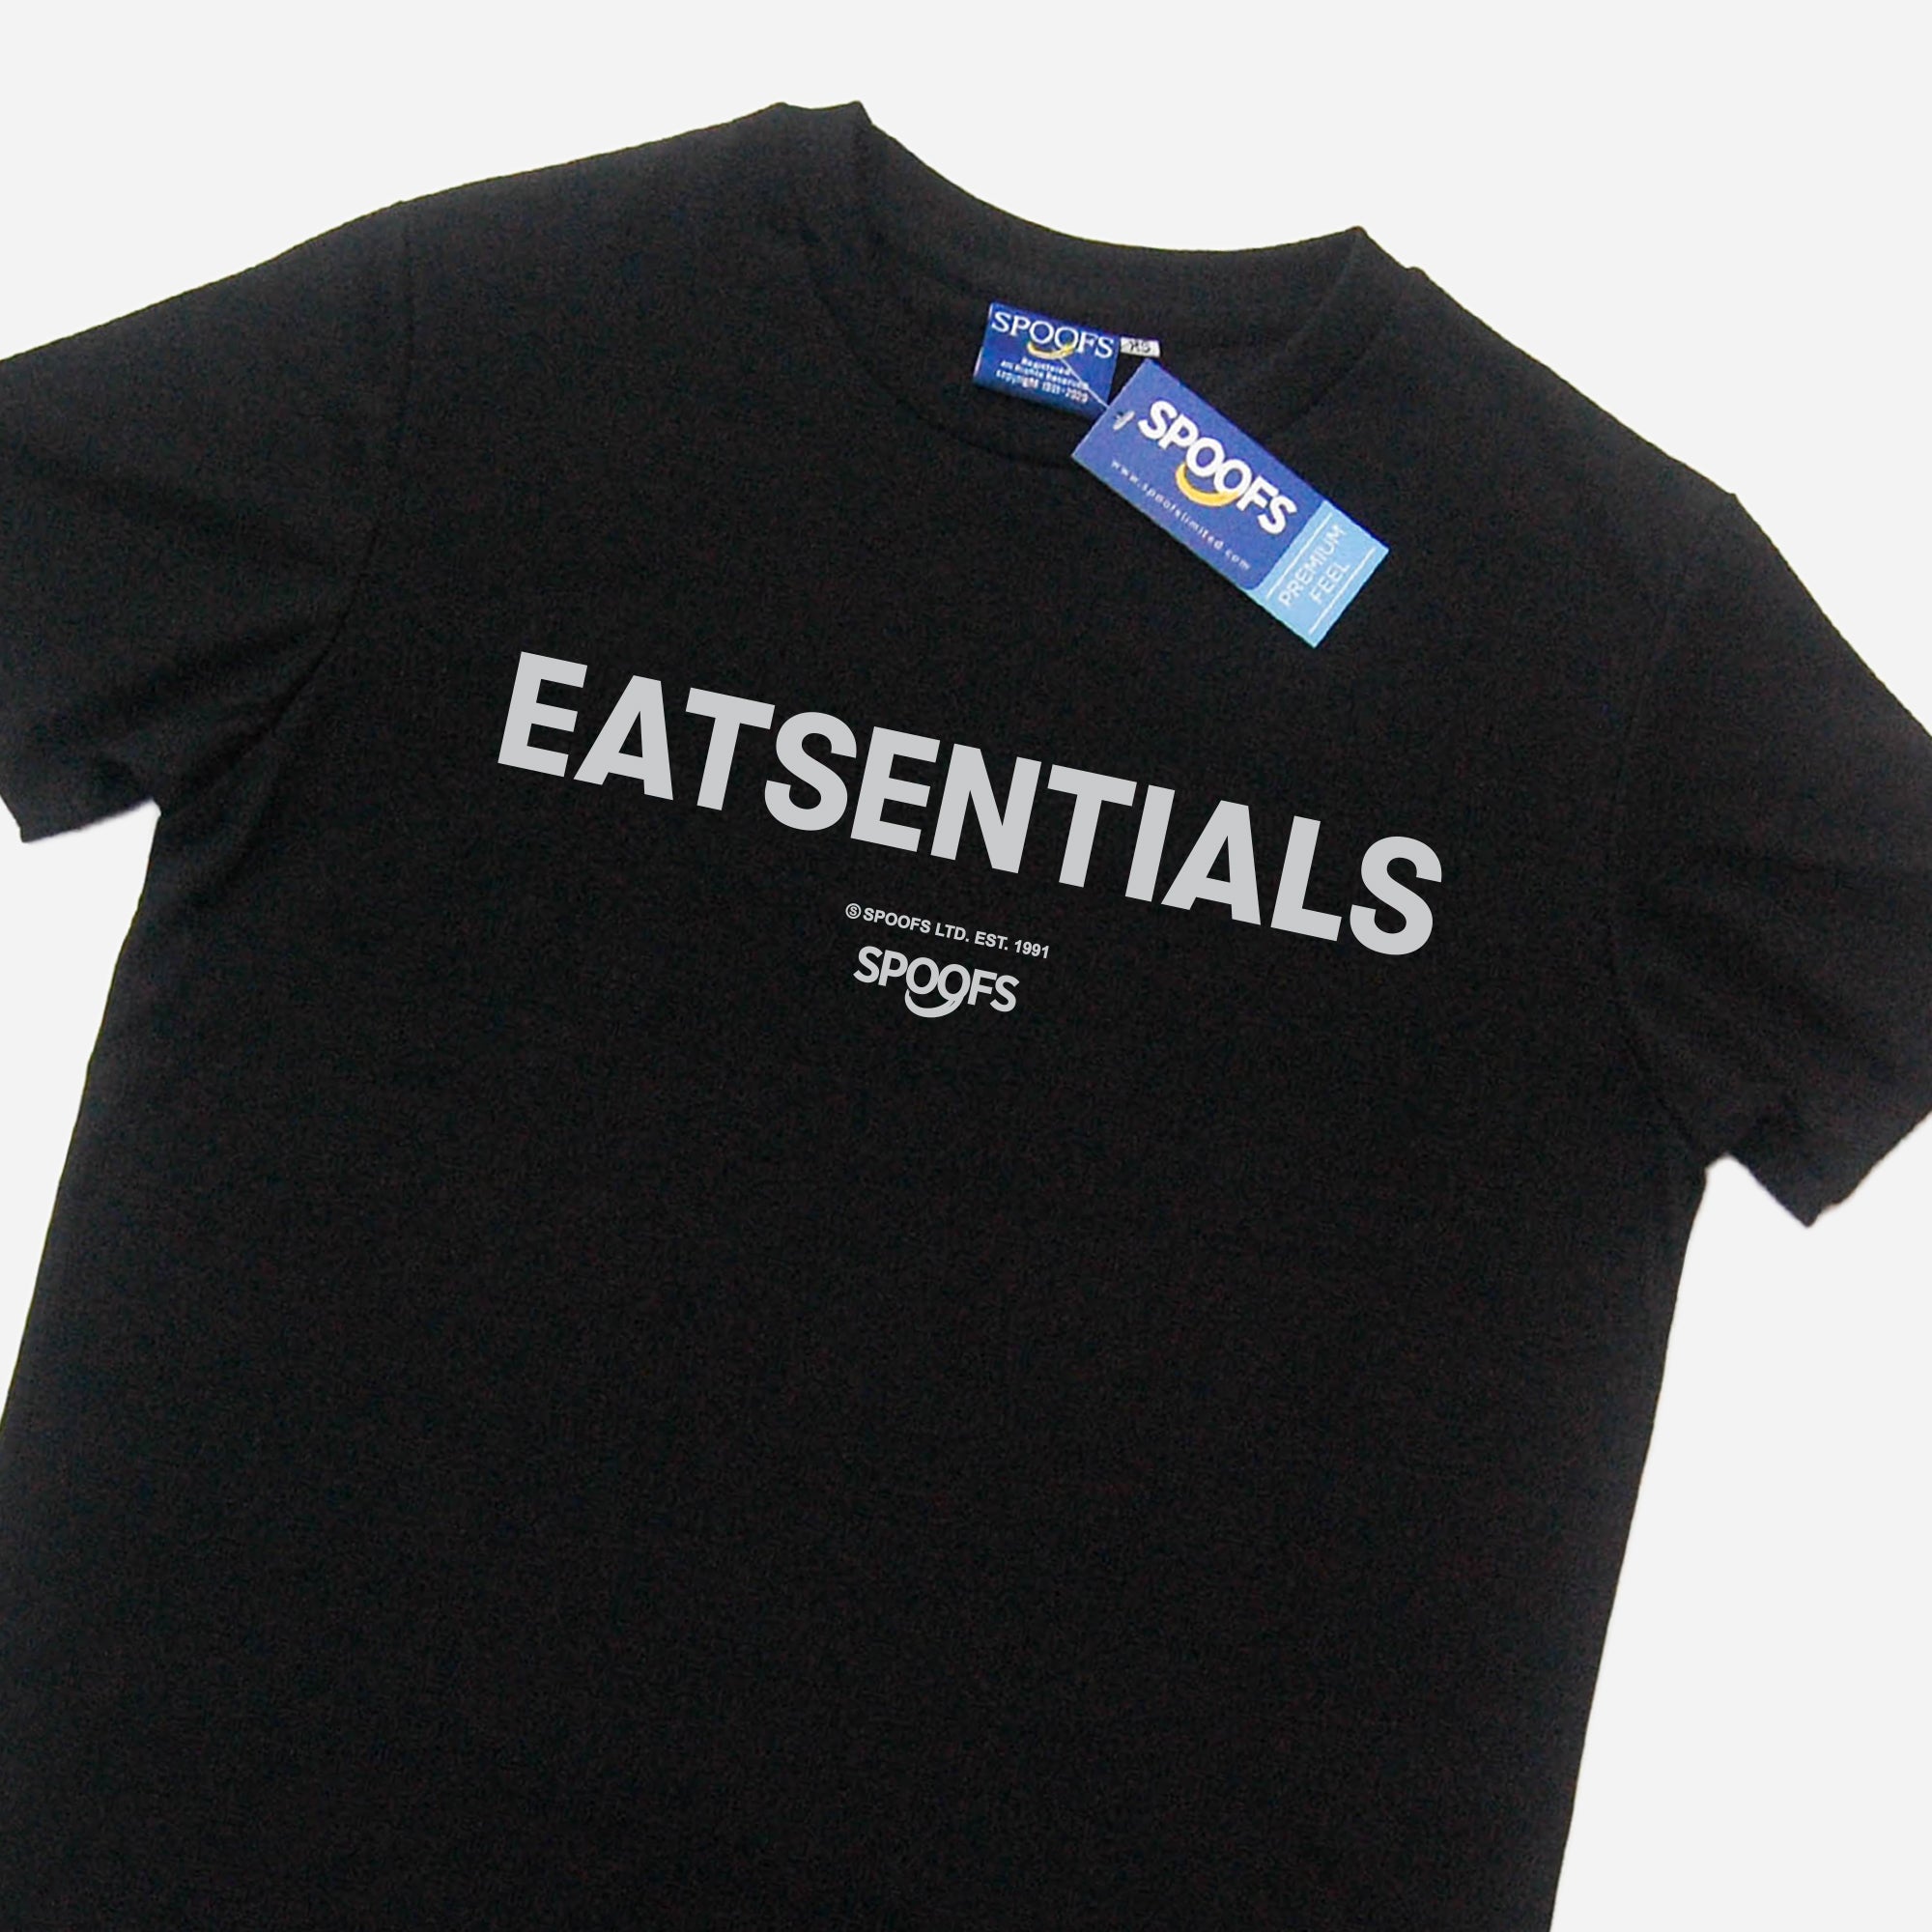 Eatsentials (Black)